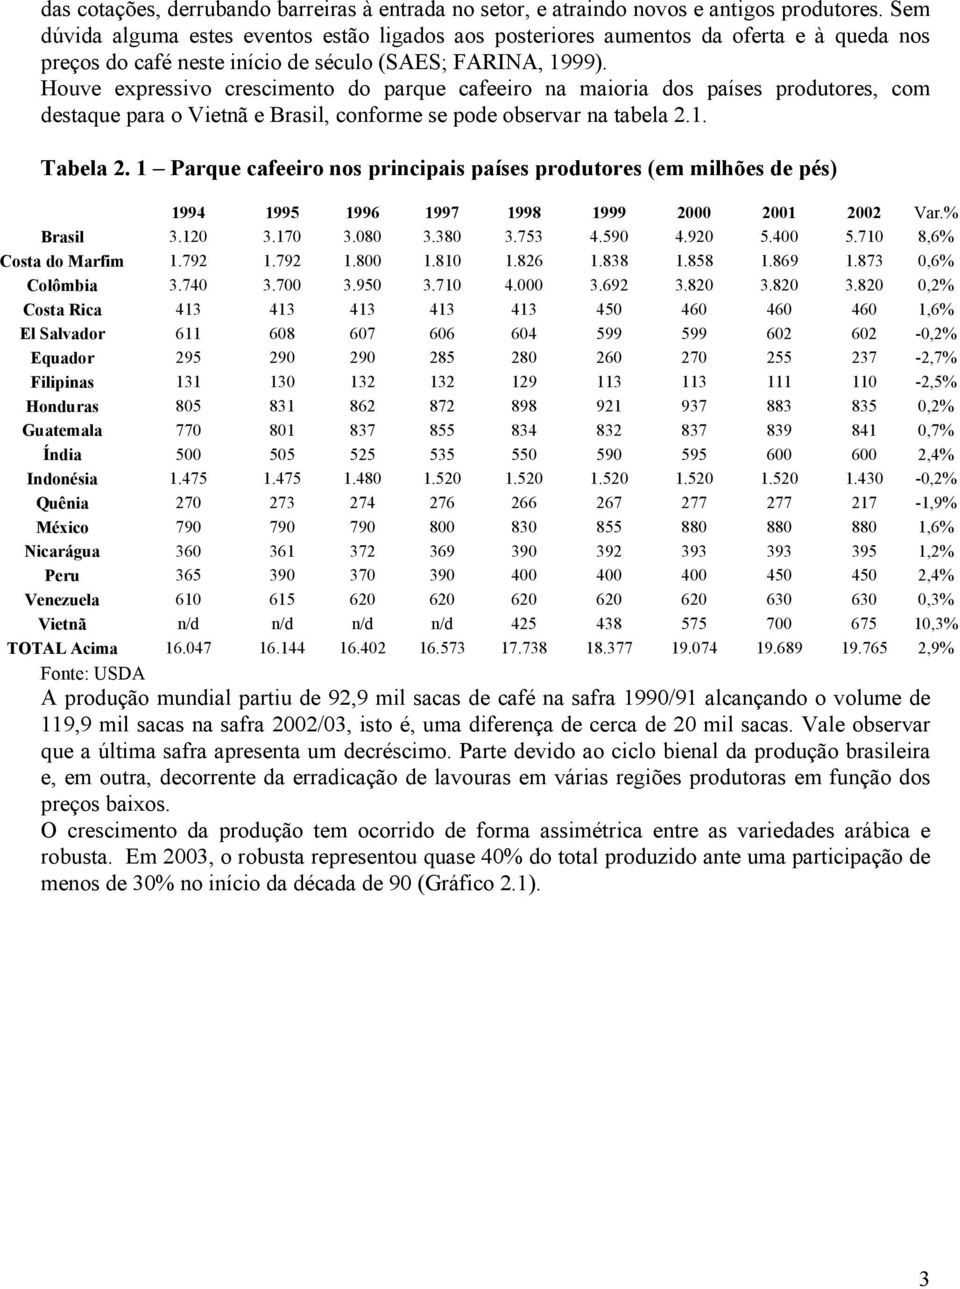 Houve expressivo crescimento do parque cafeeiro na maioria dos países produtores, com destaque para o Vietnã e Brasil, conforme se pode observar na tabela 2.1. Tabela 2.